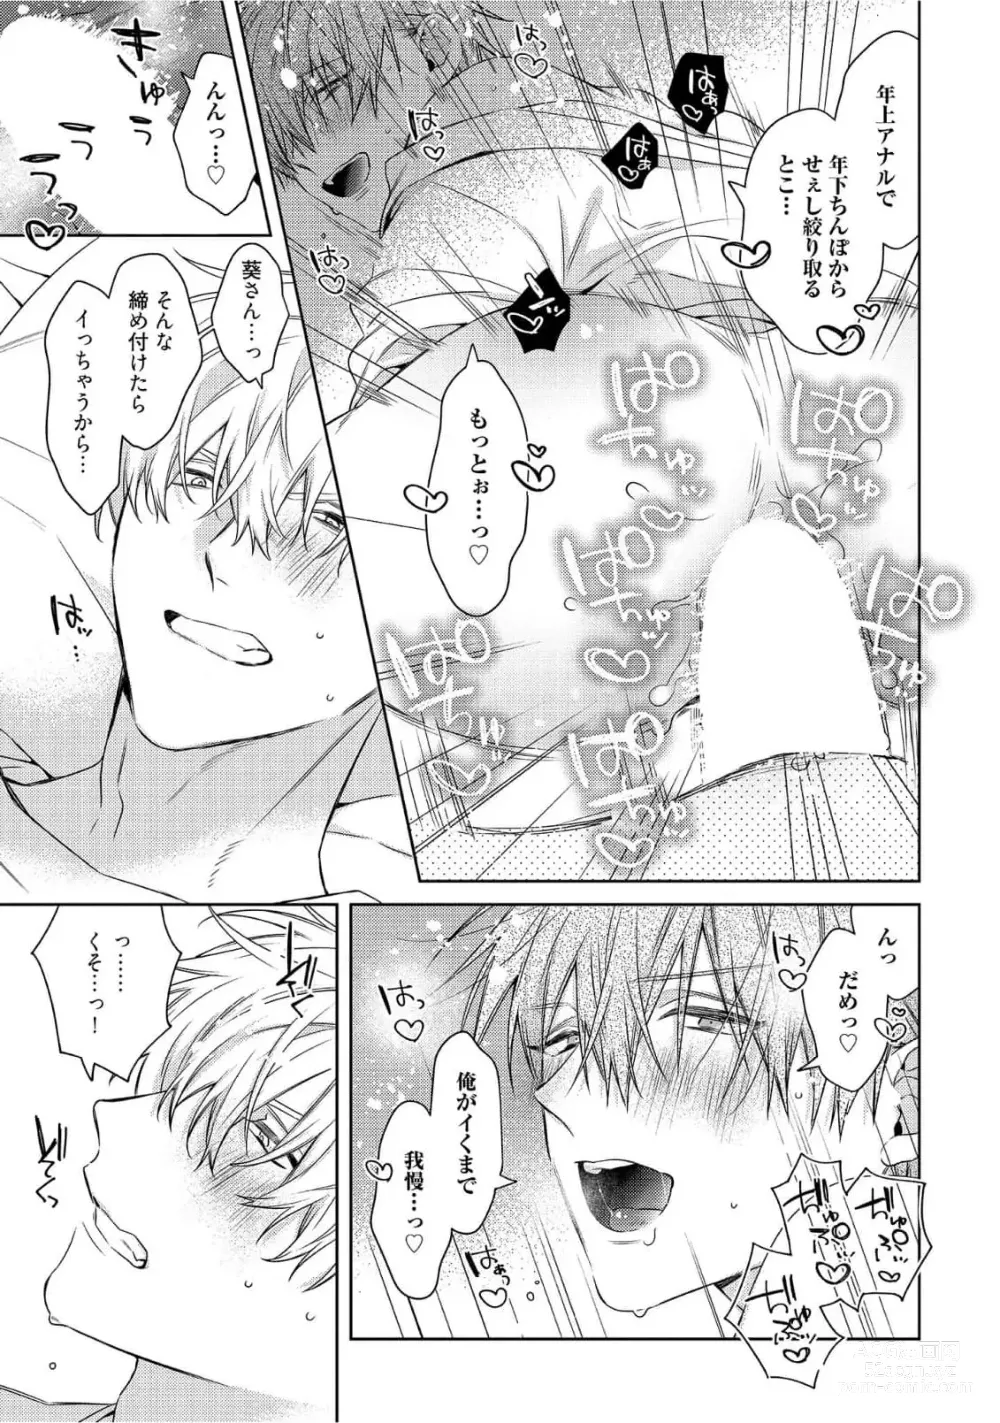 Page 275 of manga Motto! Ecchi wa shuu 7 Kibou Desu!